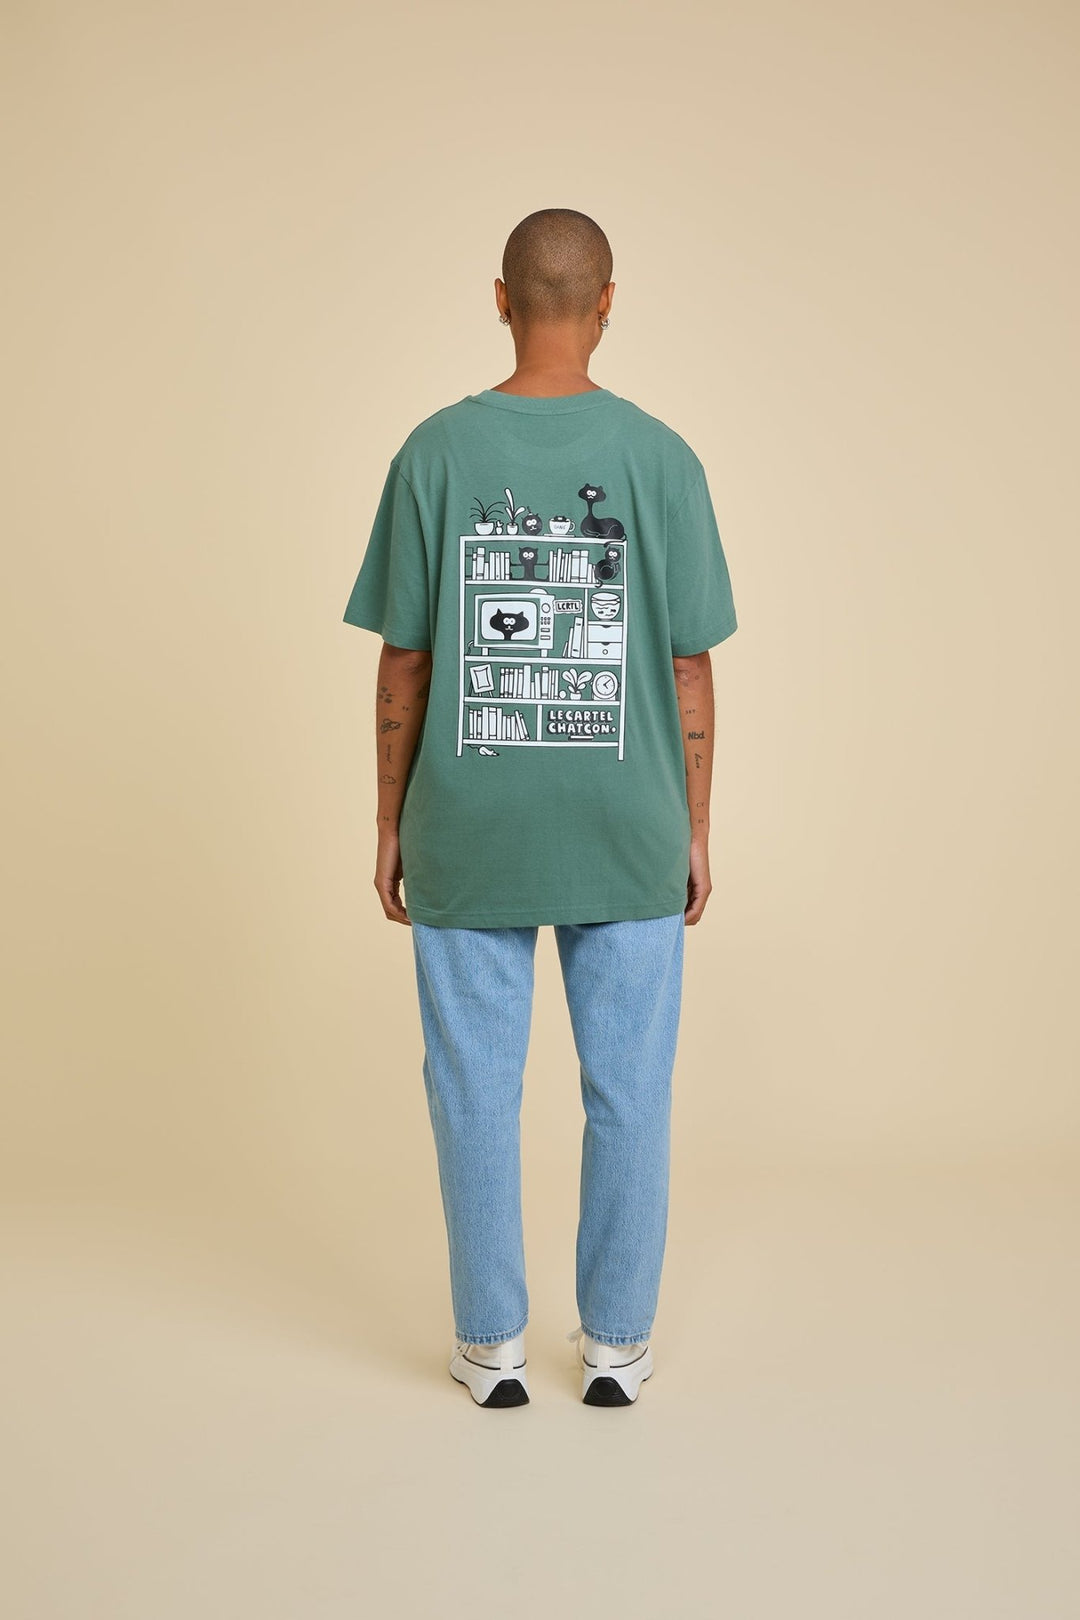 CHAT DE SALON・T - shirt unisexe・Vert d'eau - Le Cartel